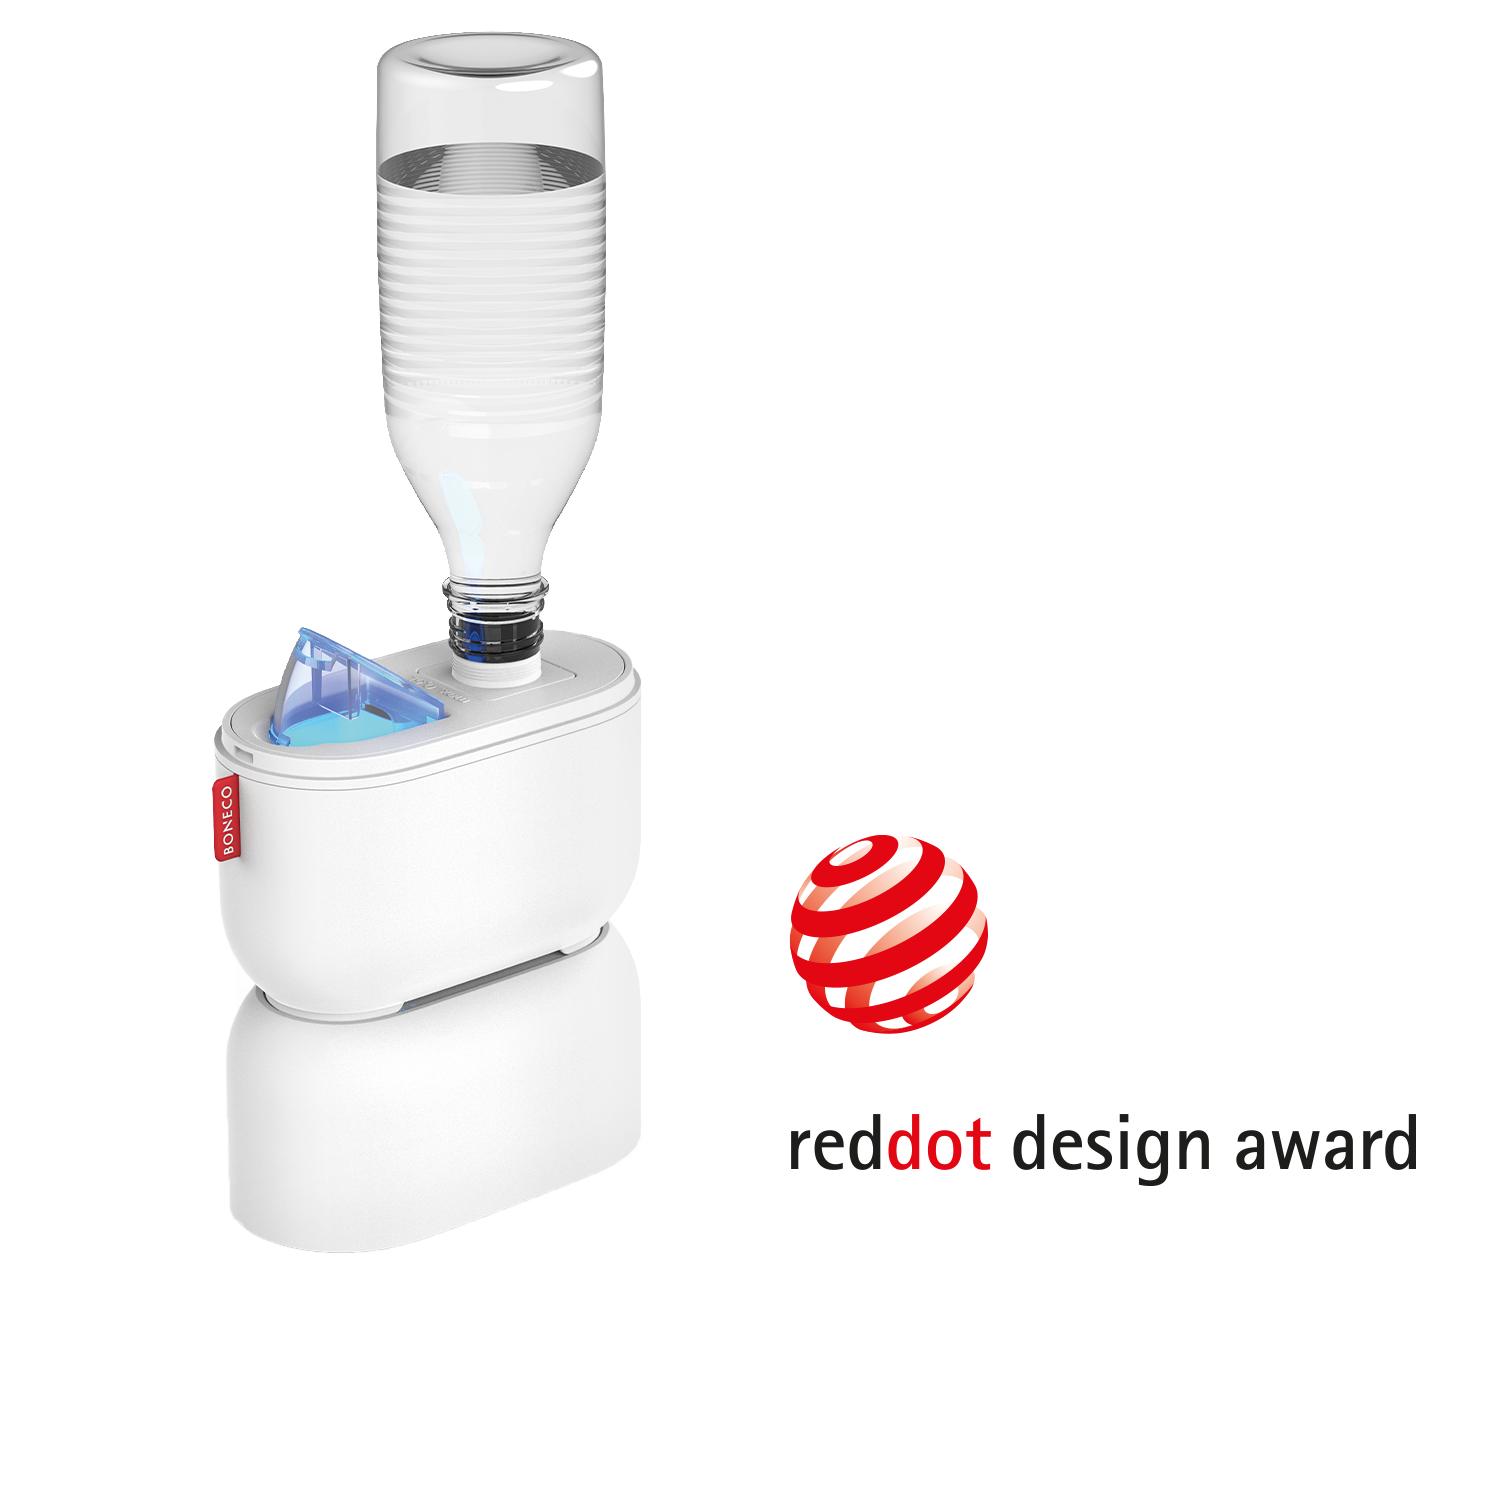 U100 Travel Ultrasonic Humidifier BONECO reddotdesign award